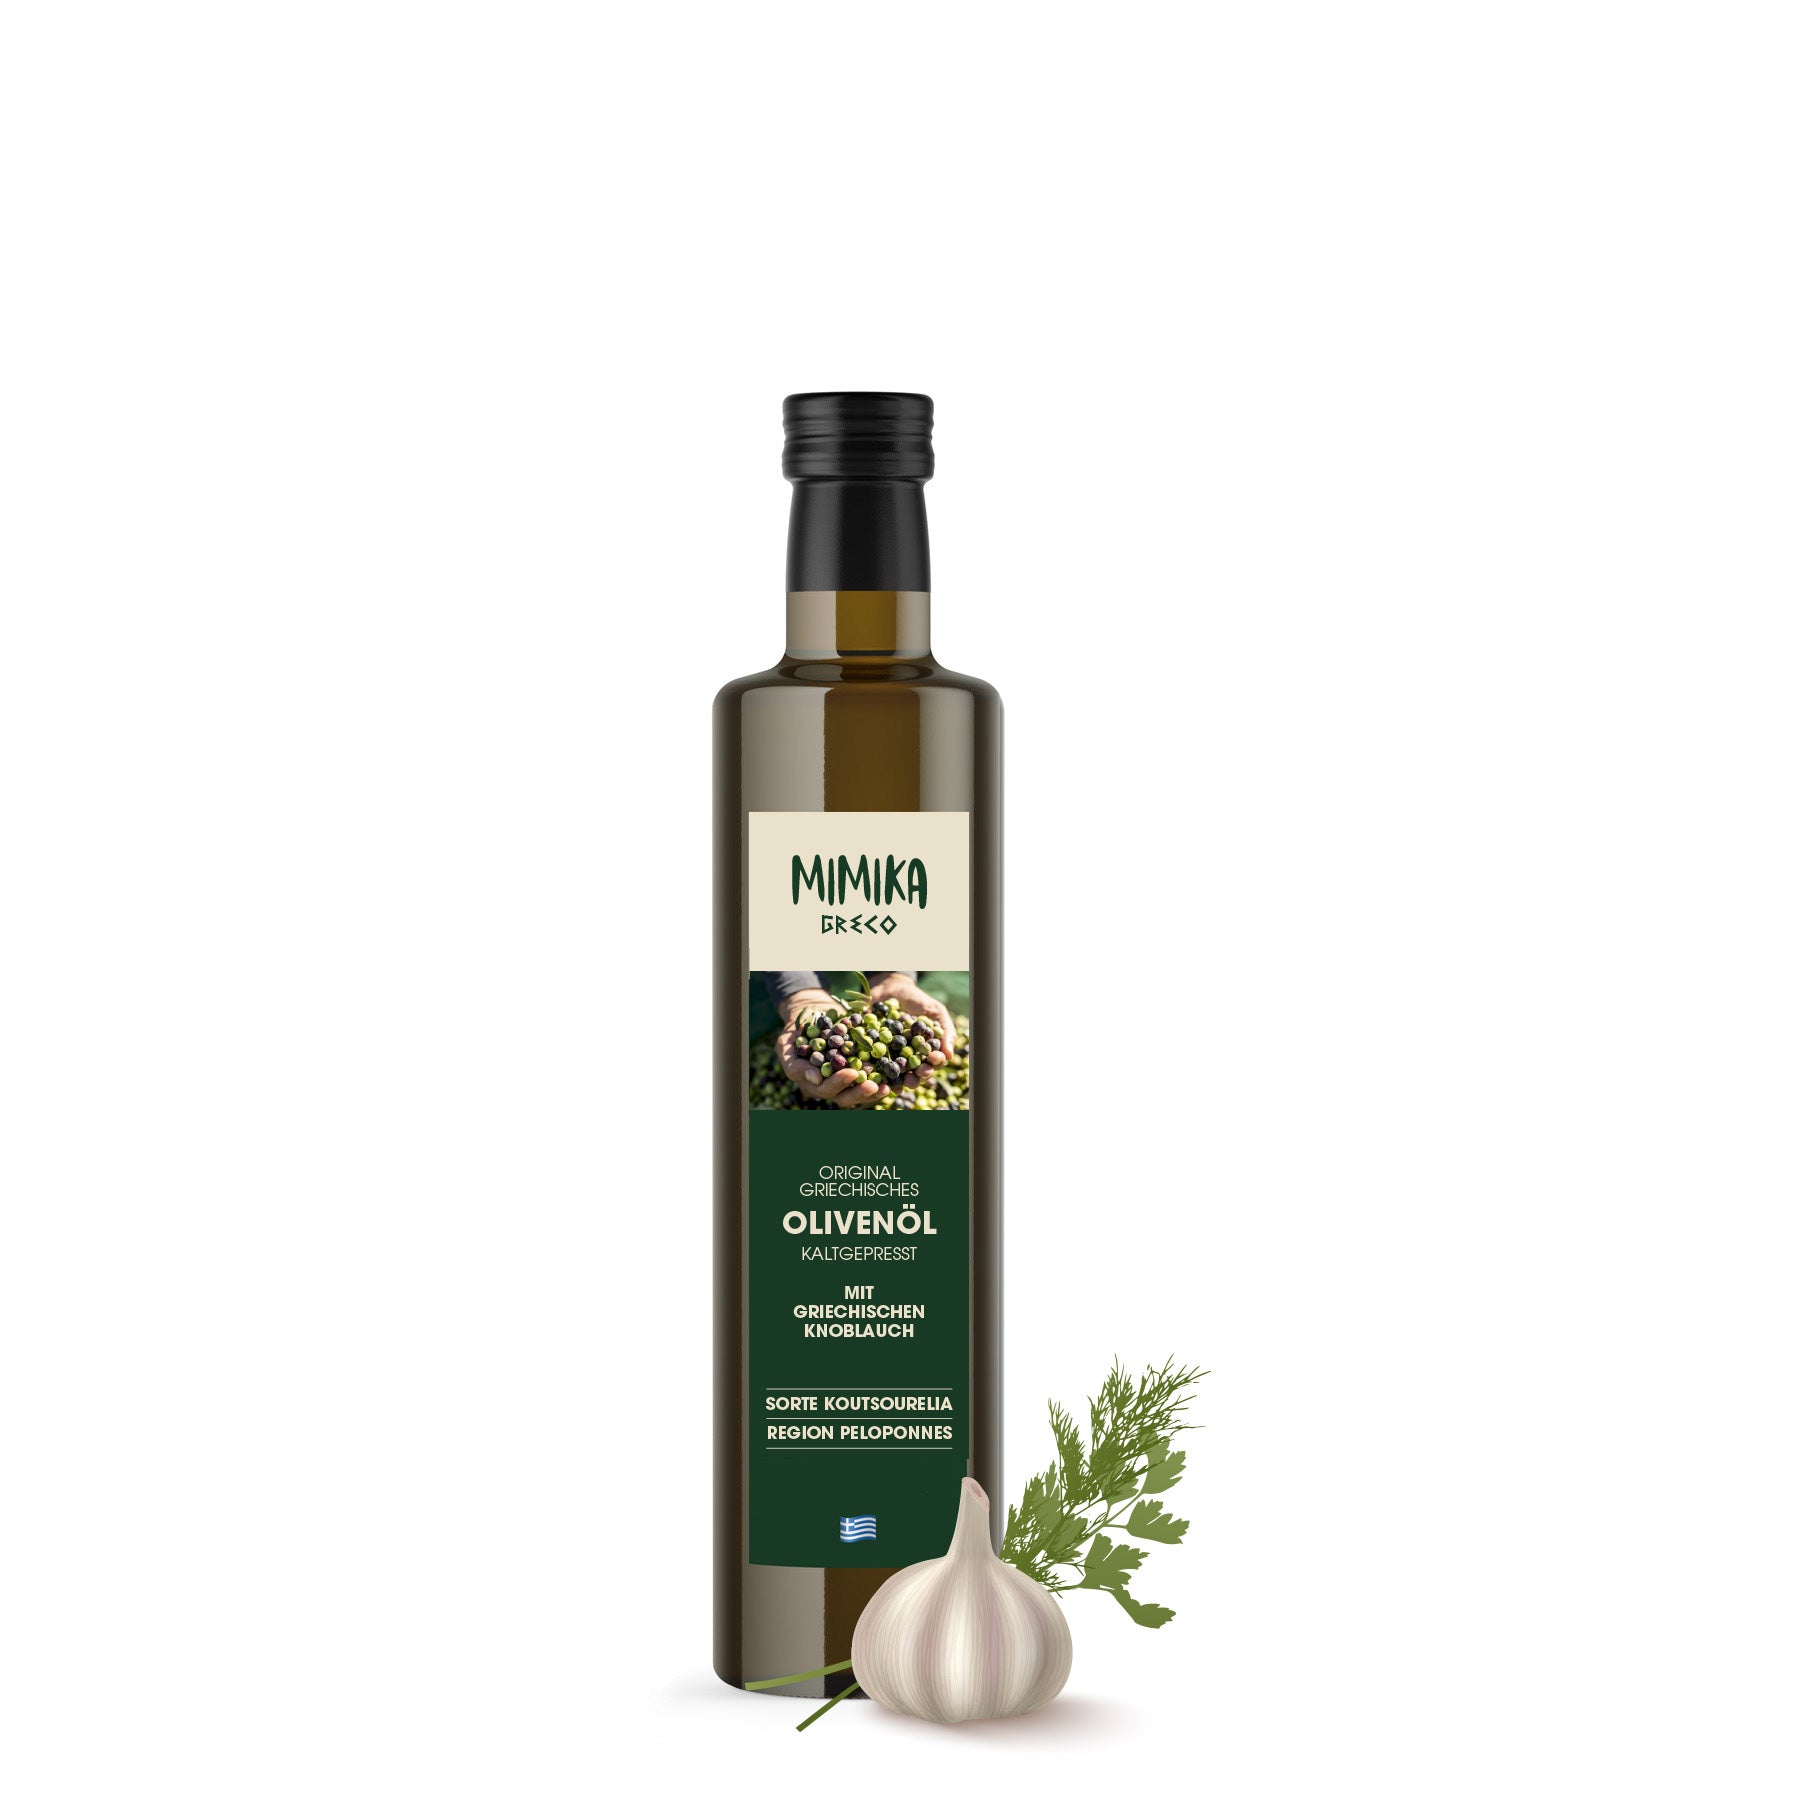 MIMIKA Olivenöl, Knoblauch 250ml